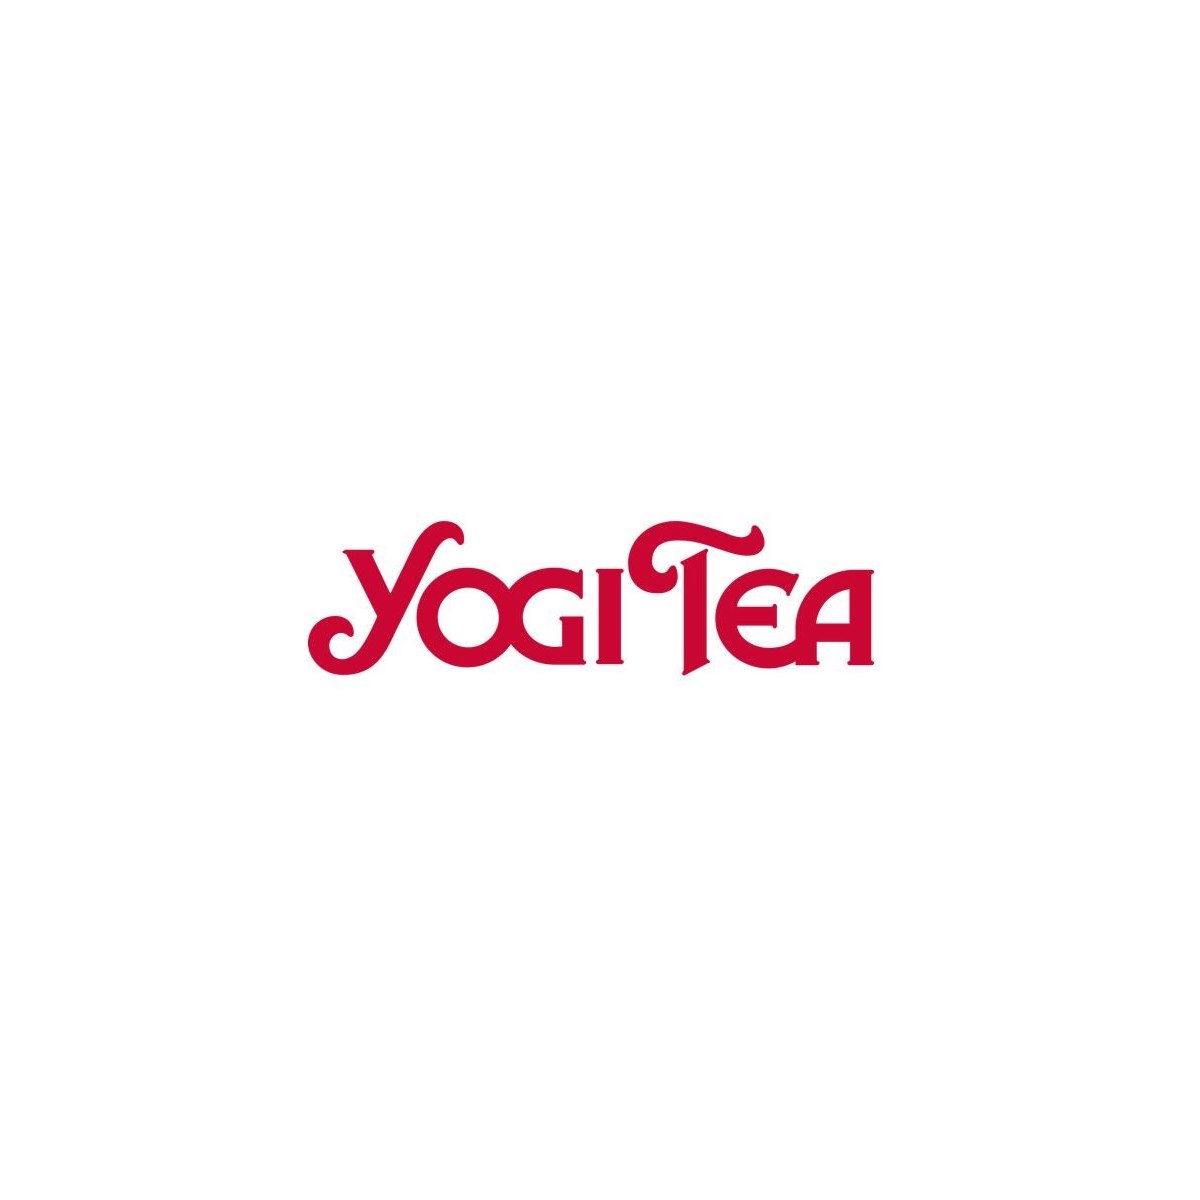 Where-to-buy-yogi-tea